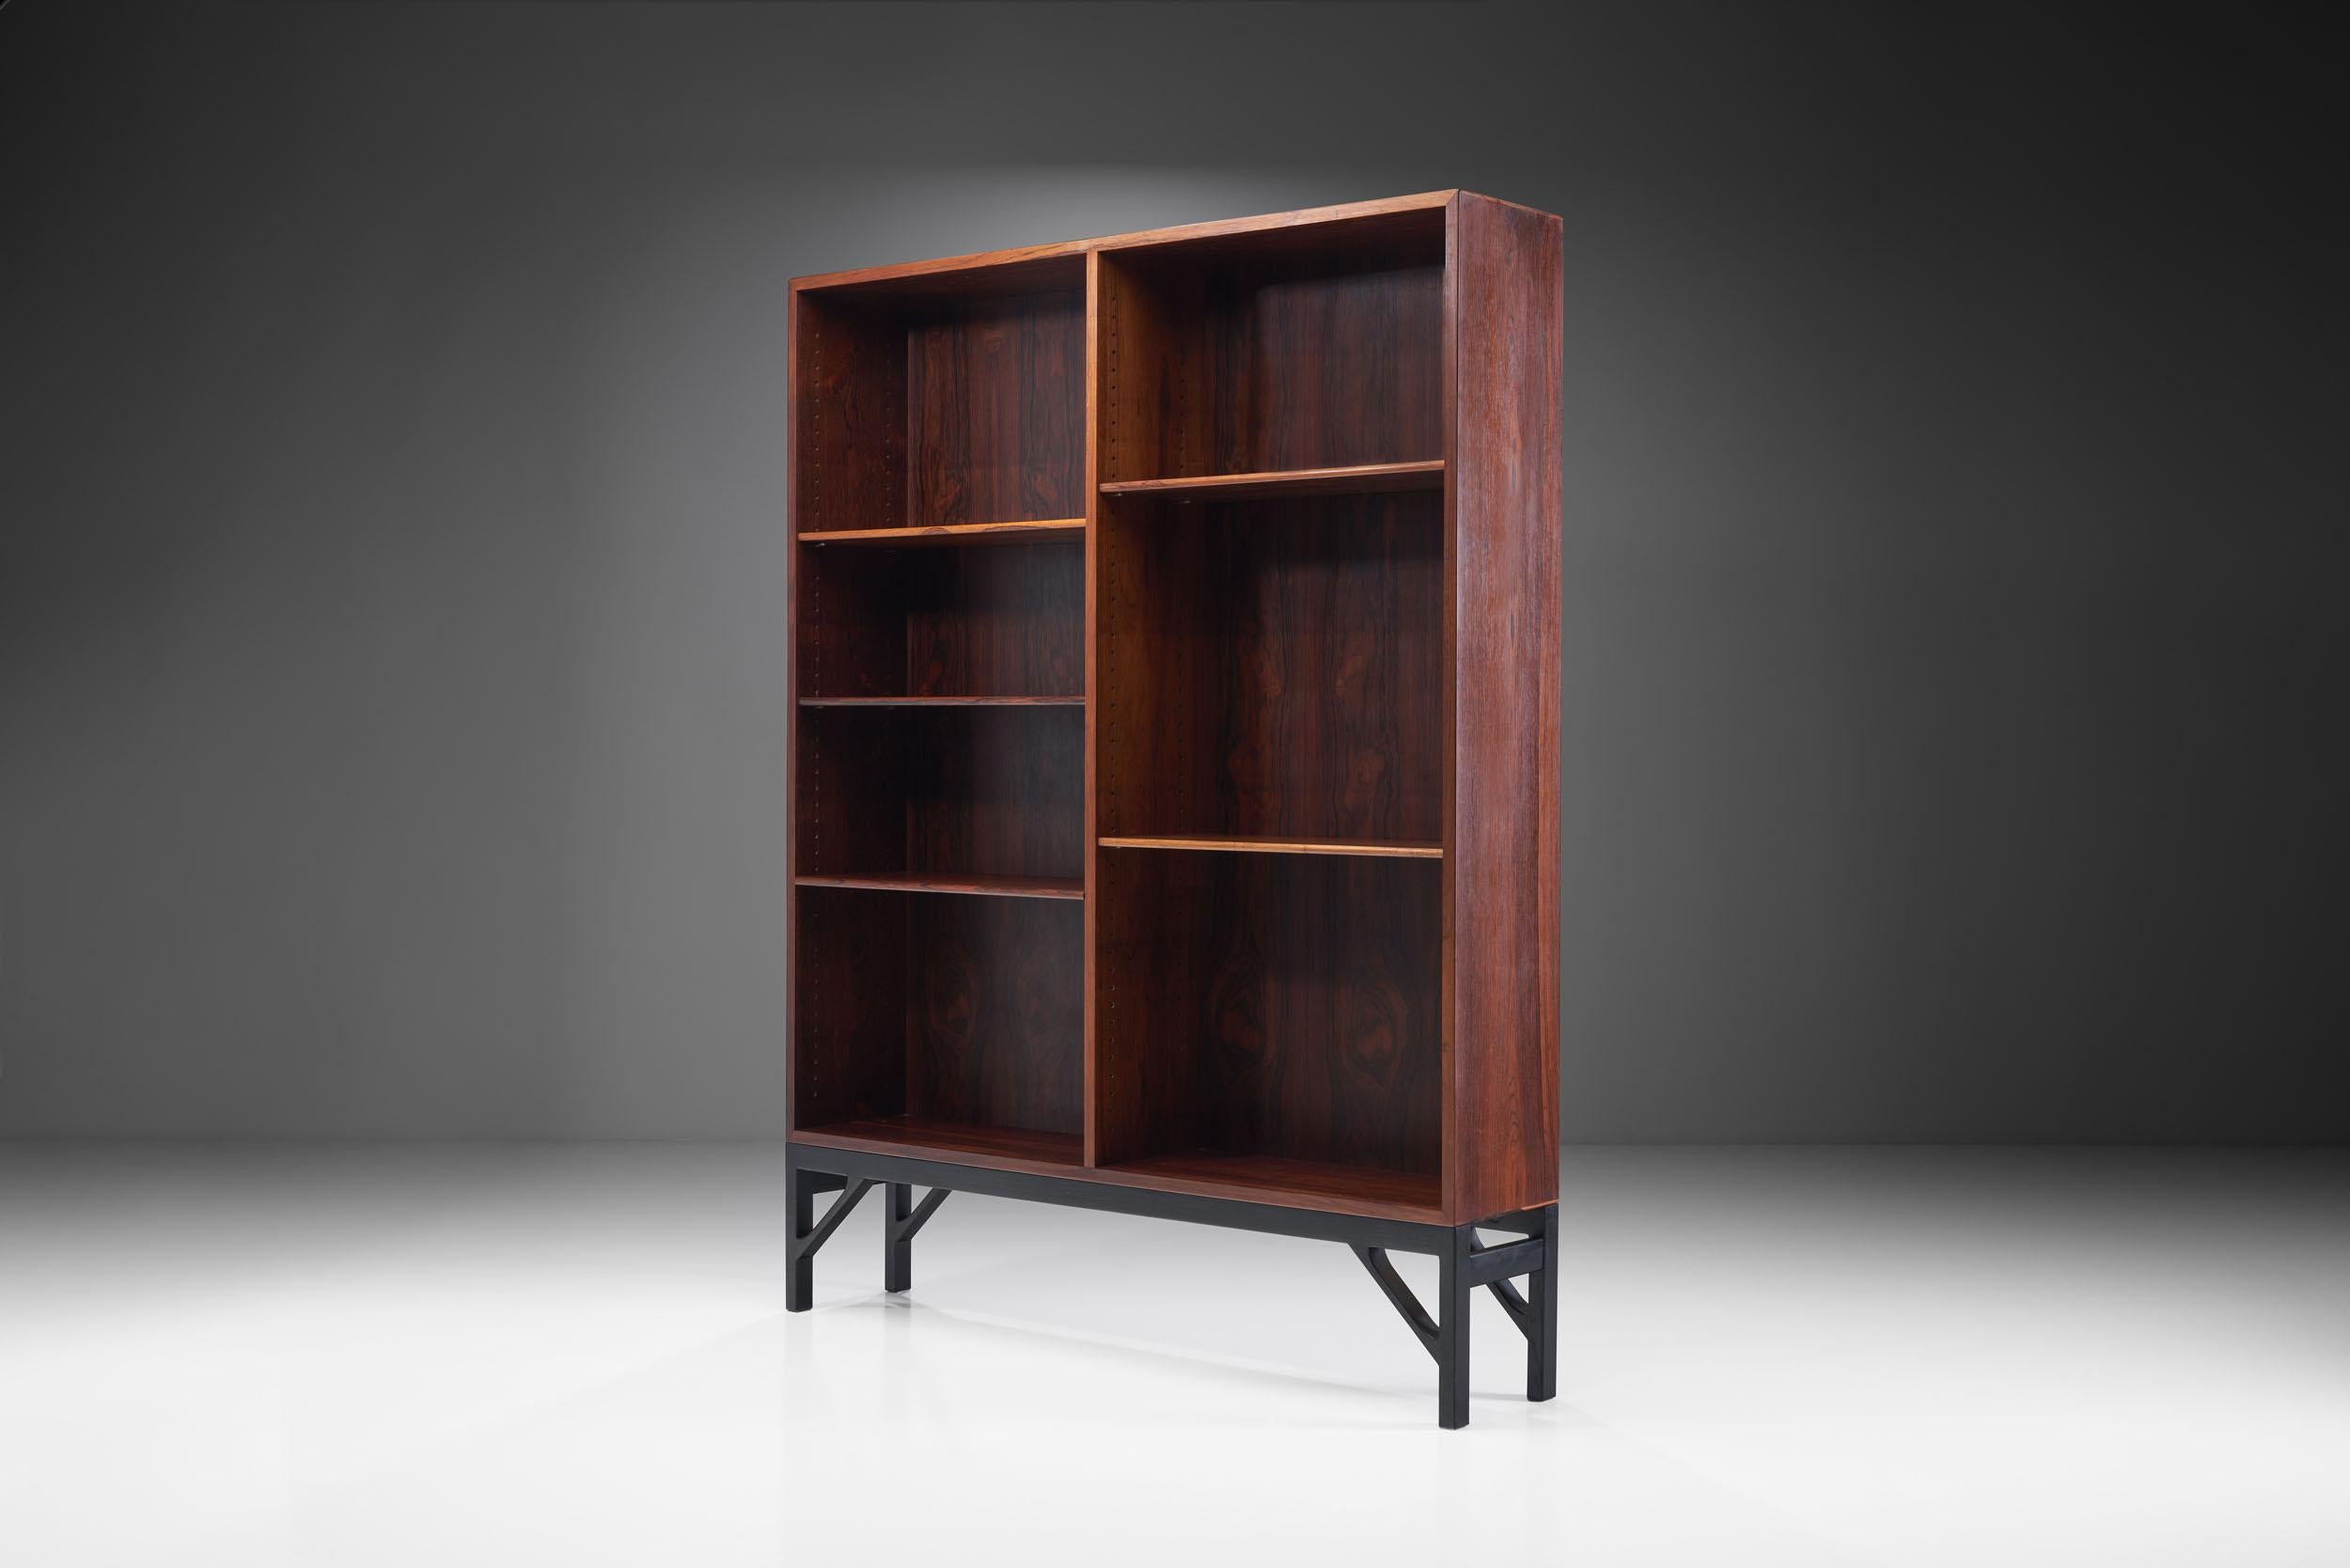 Dieses beeindruckende Bücherregal von Børge Mogensen spiegelt die klare und funktionale Ästhetik des dänischen Designers wider, der trotz seines zurückhaltenden Designs auffallende Stücke schuf.

Das Bücherregal ist aus Holz mit einer schönen